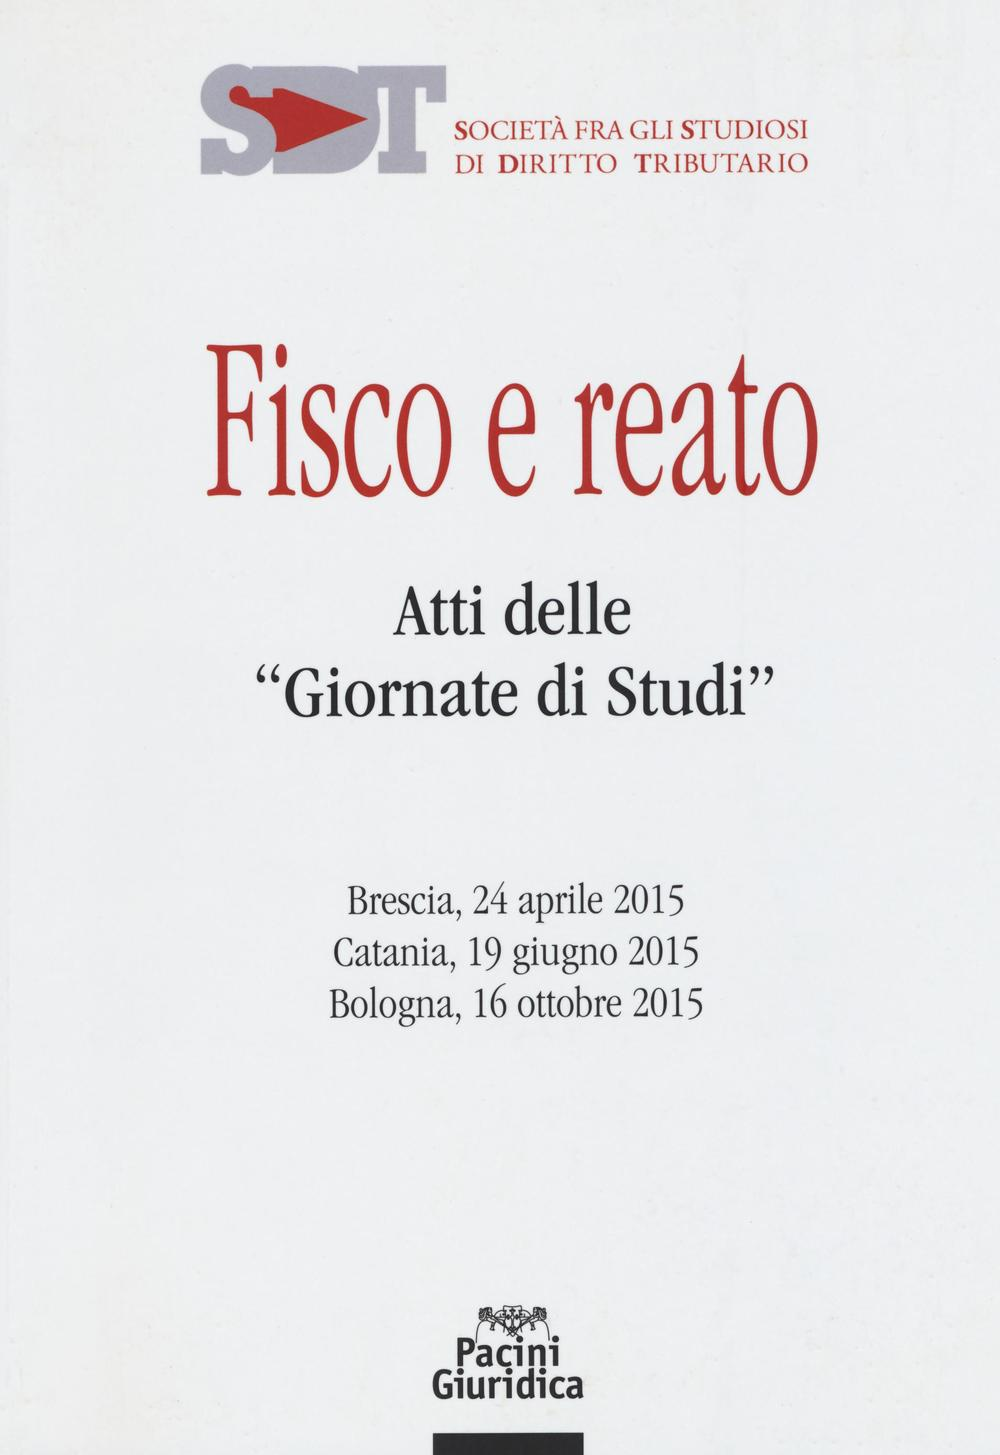 Image of Fisco e reato. Atti delle "Giornate di studi" (Brescia, 24 aprile 2015; Catania, 19 giugno 2015; Bologna, 16 ottobre 2015)